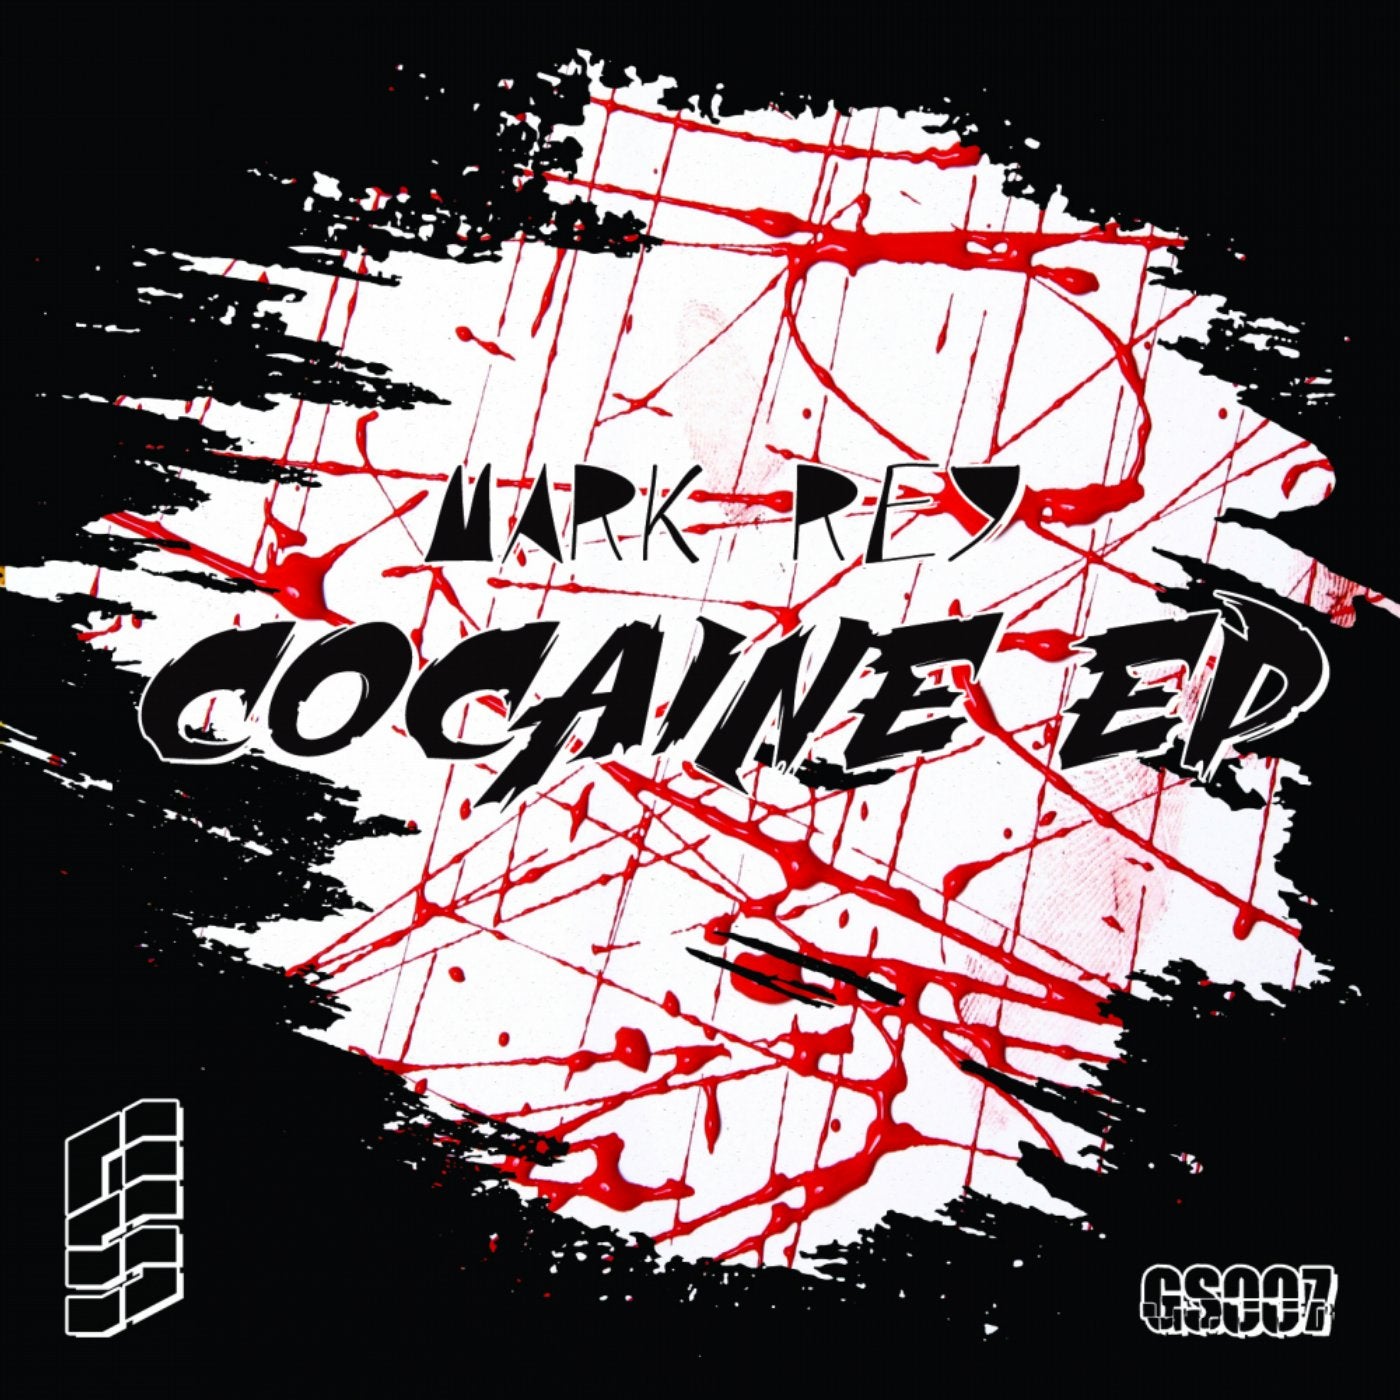 Cocaine EP